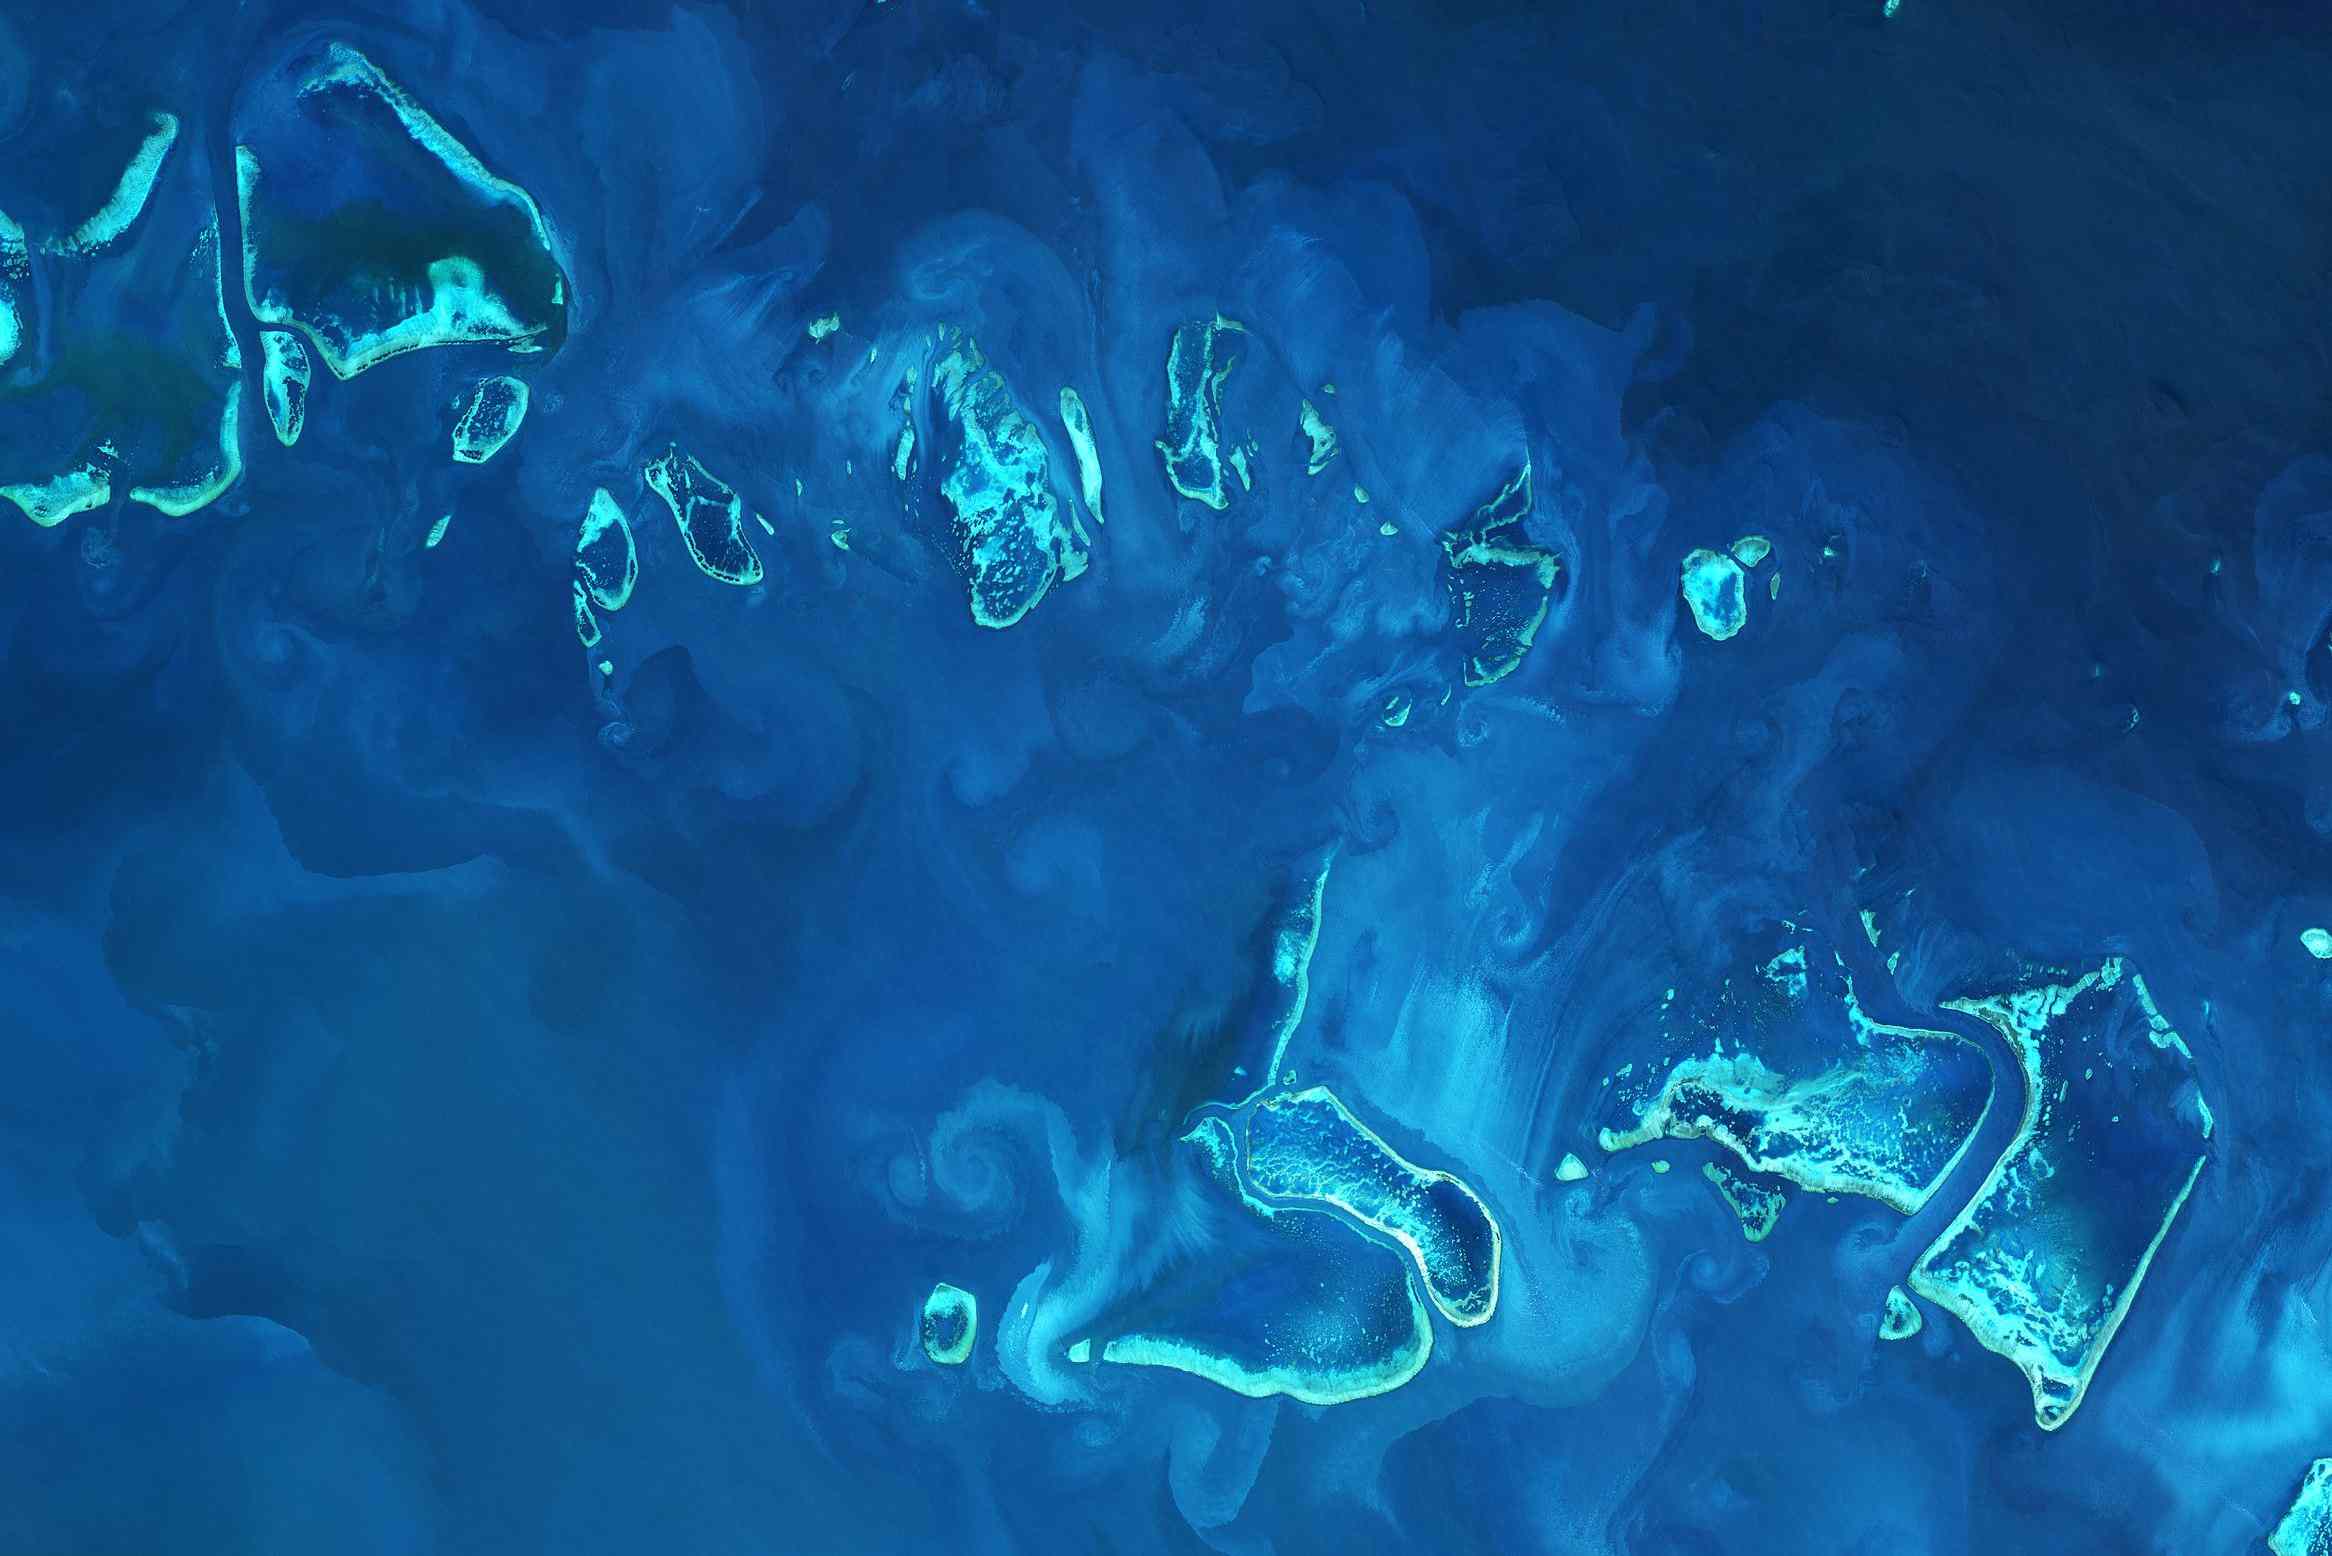 2017年的大堡礁卫星图像